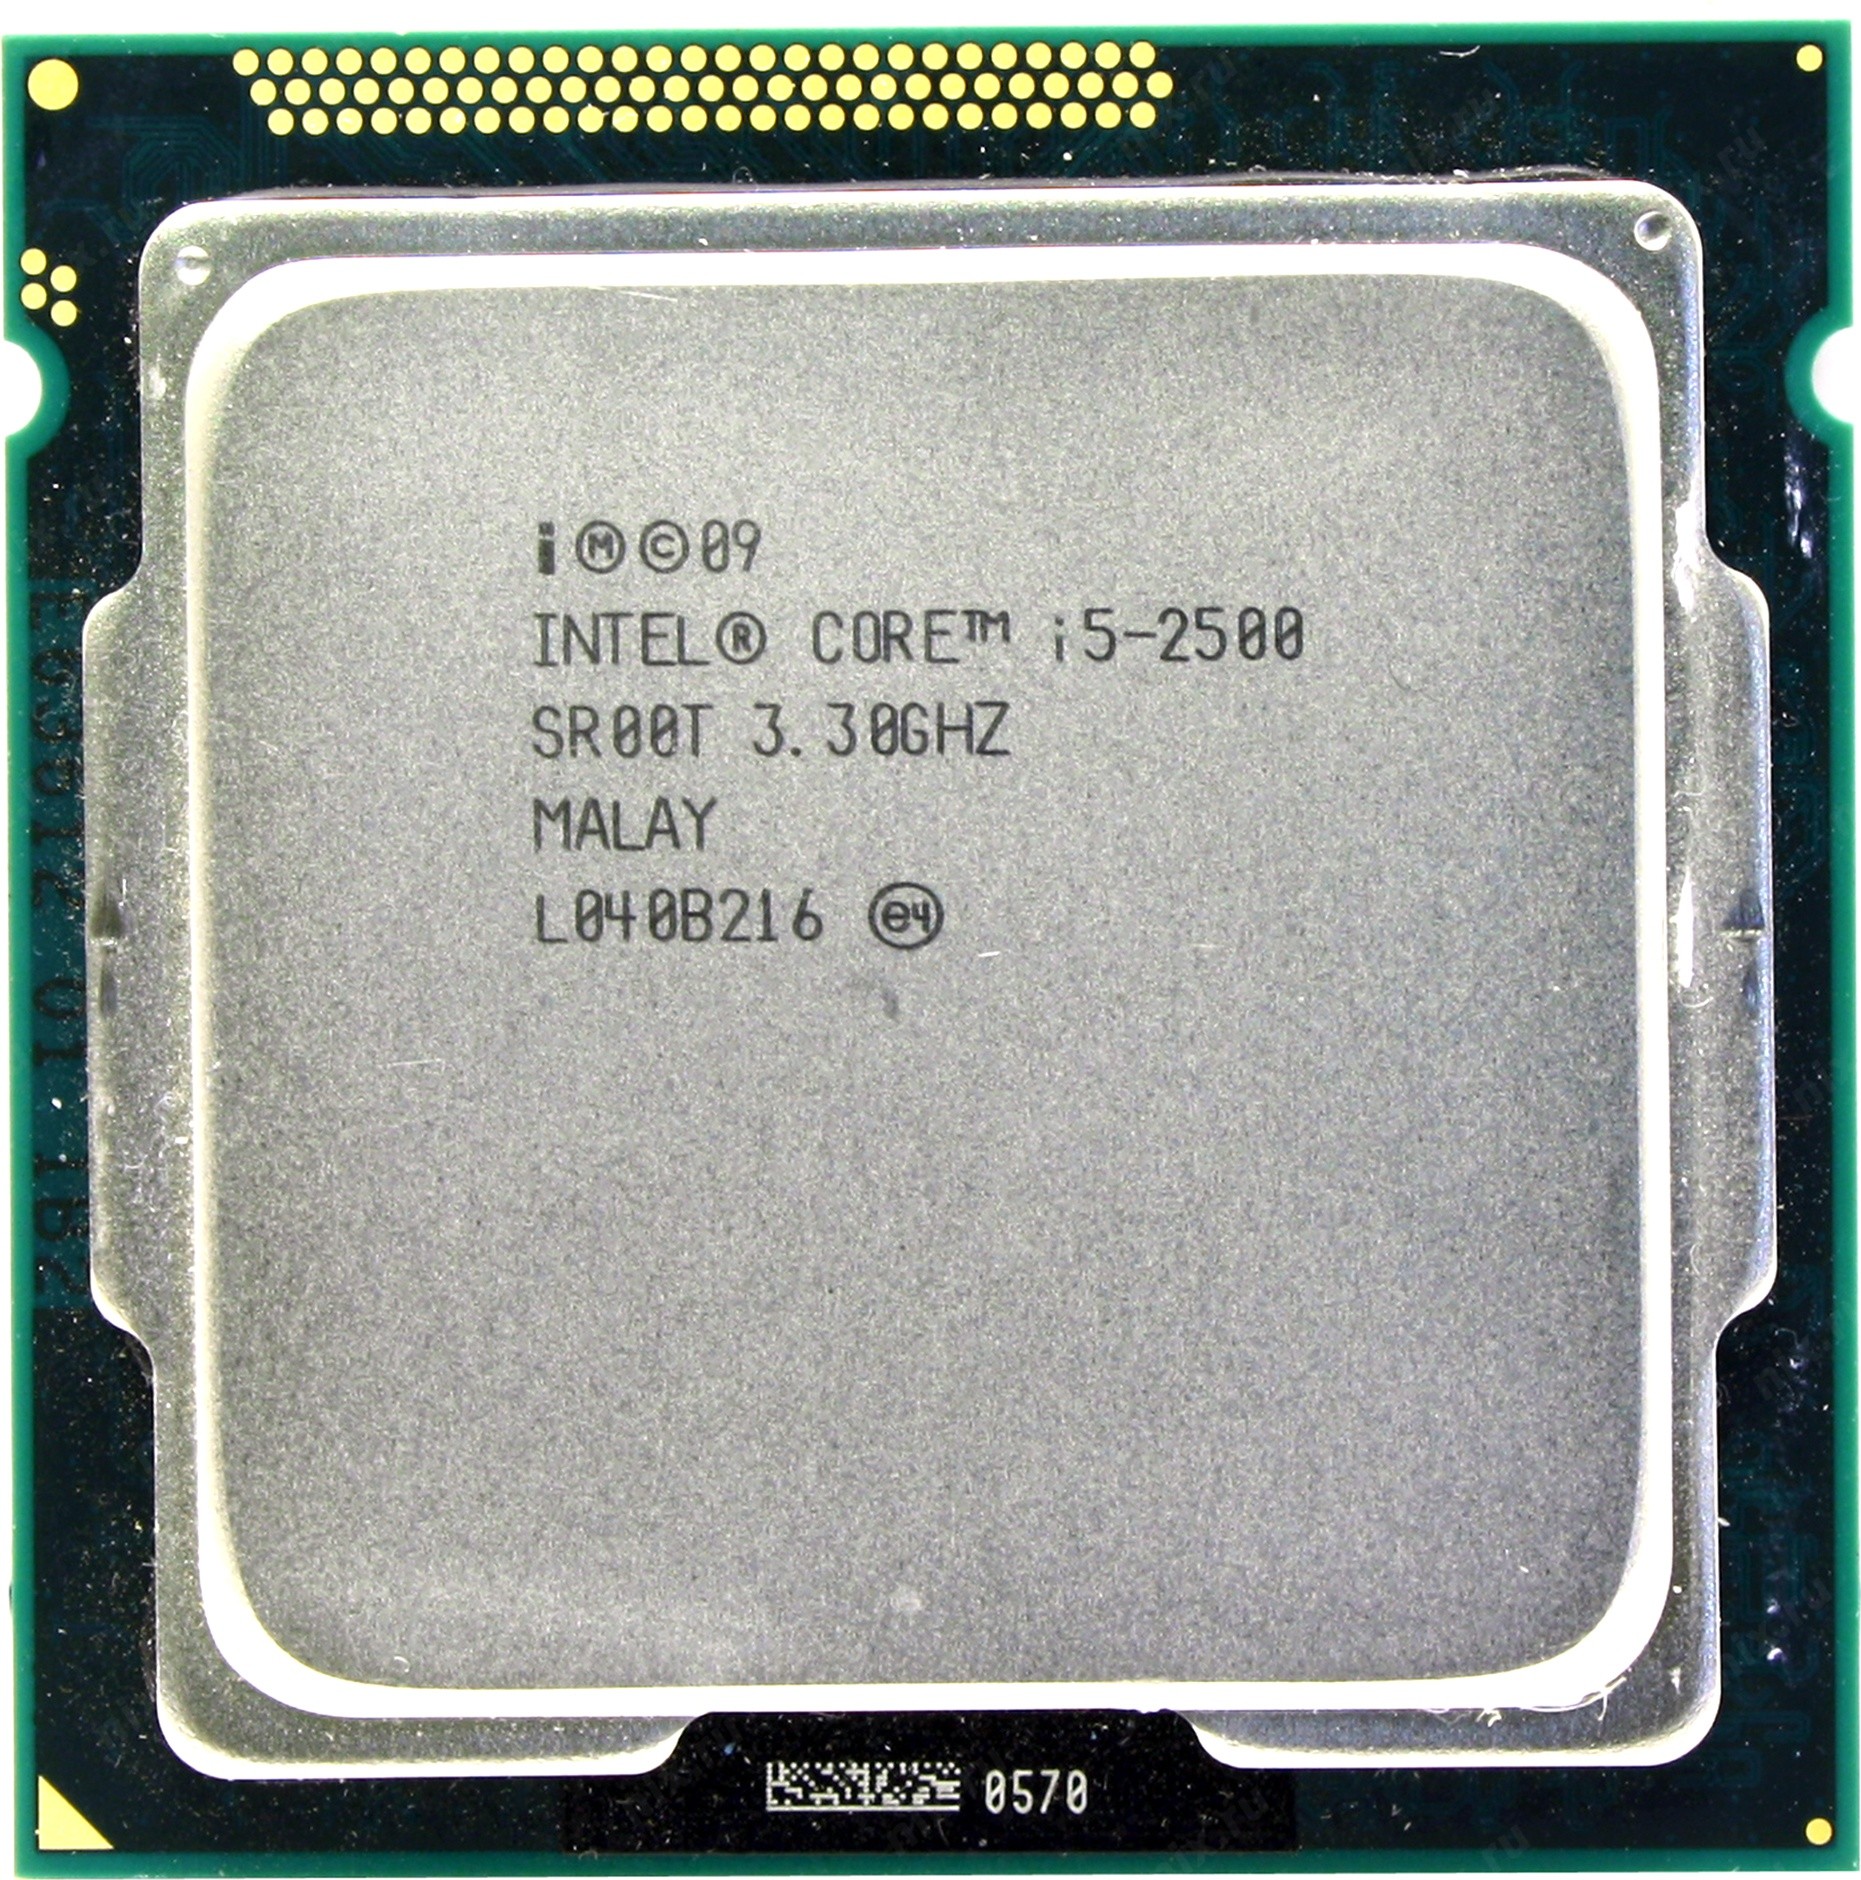 Processor Intel Core I5 2500 Kupit Cena I Harakteristiki Otzyvy